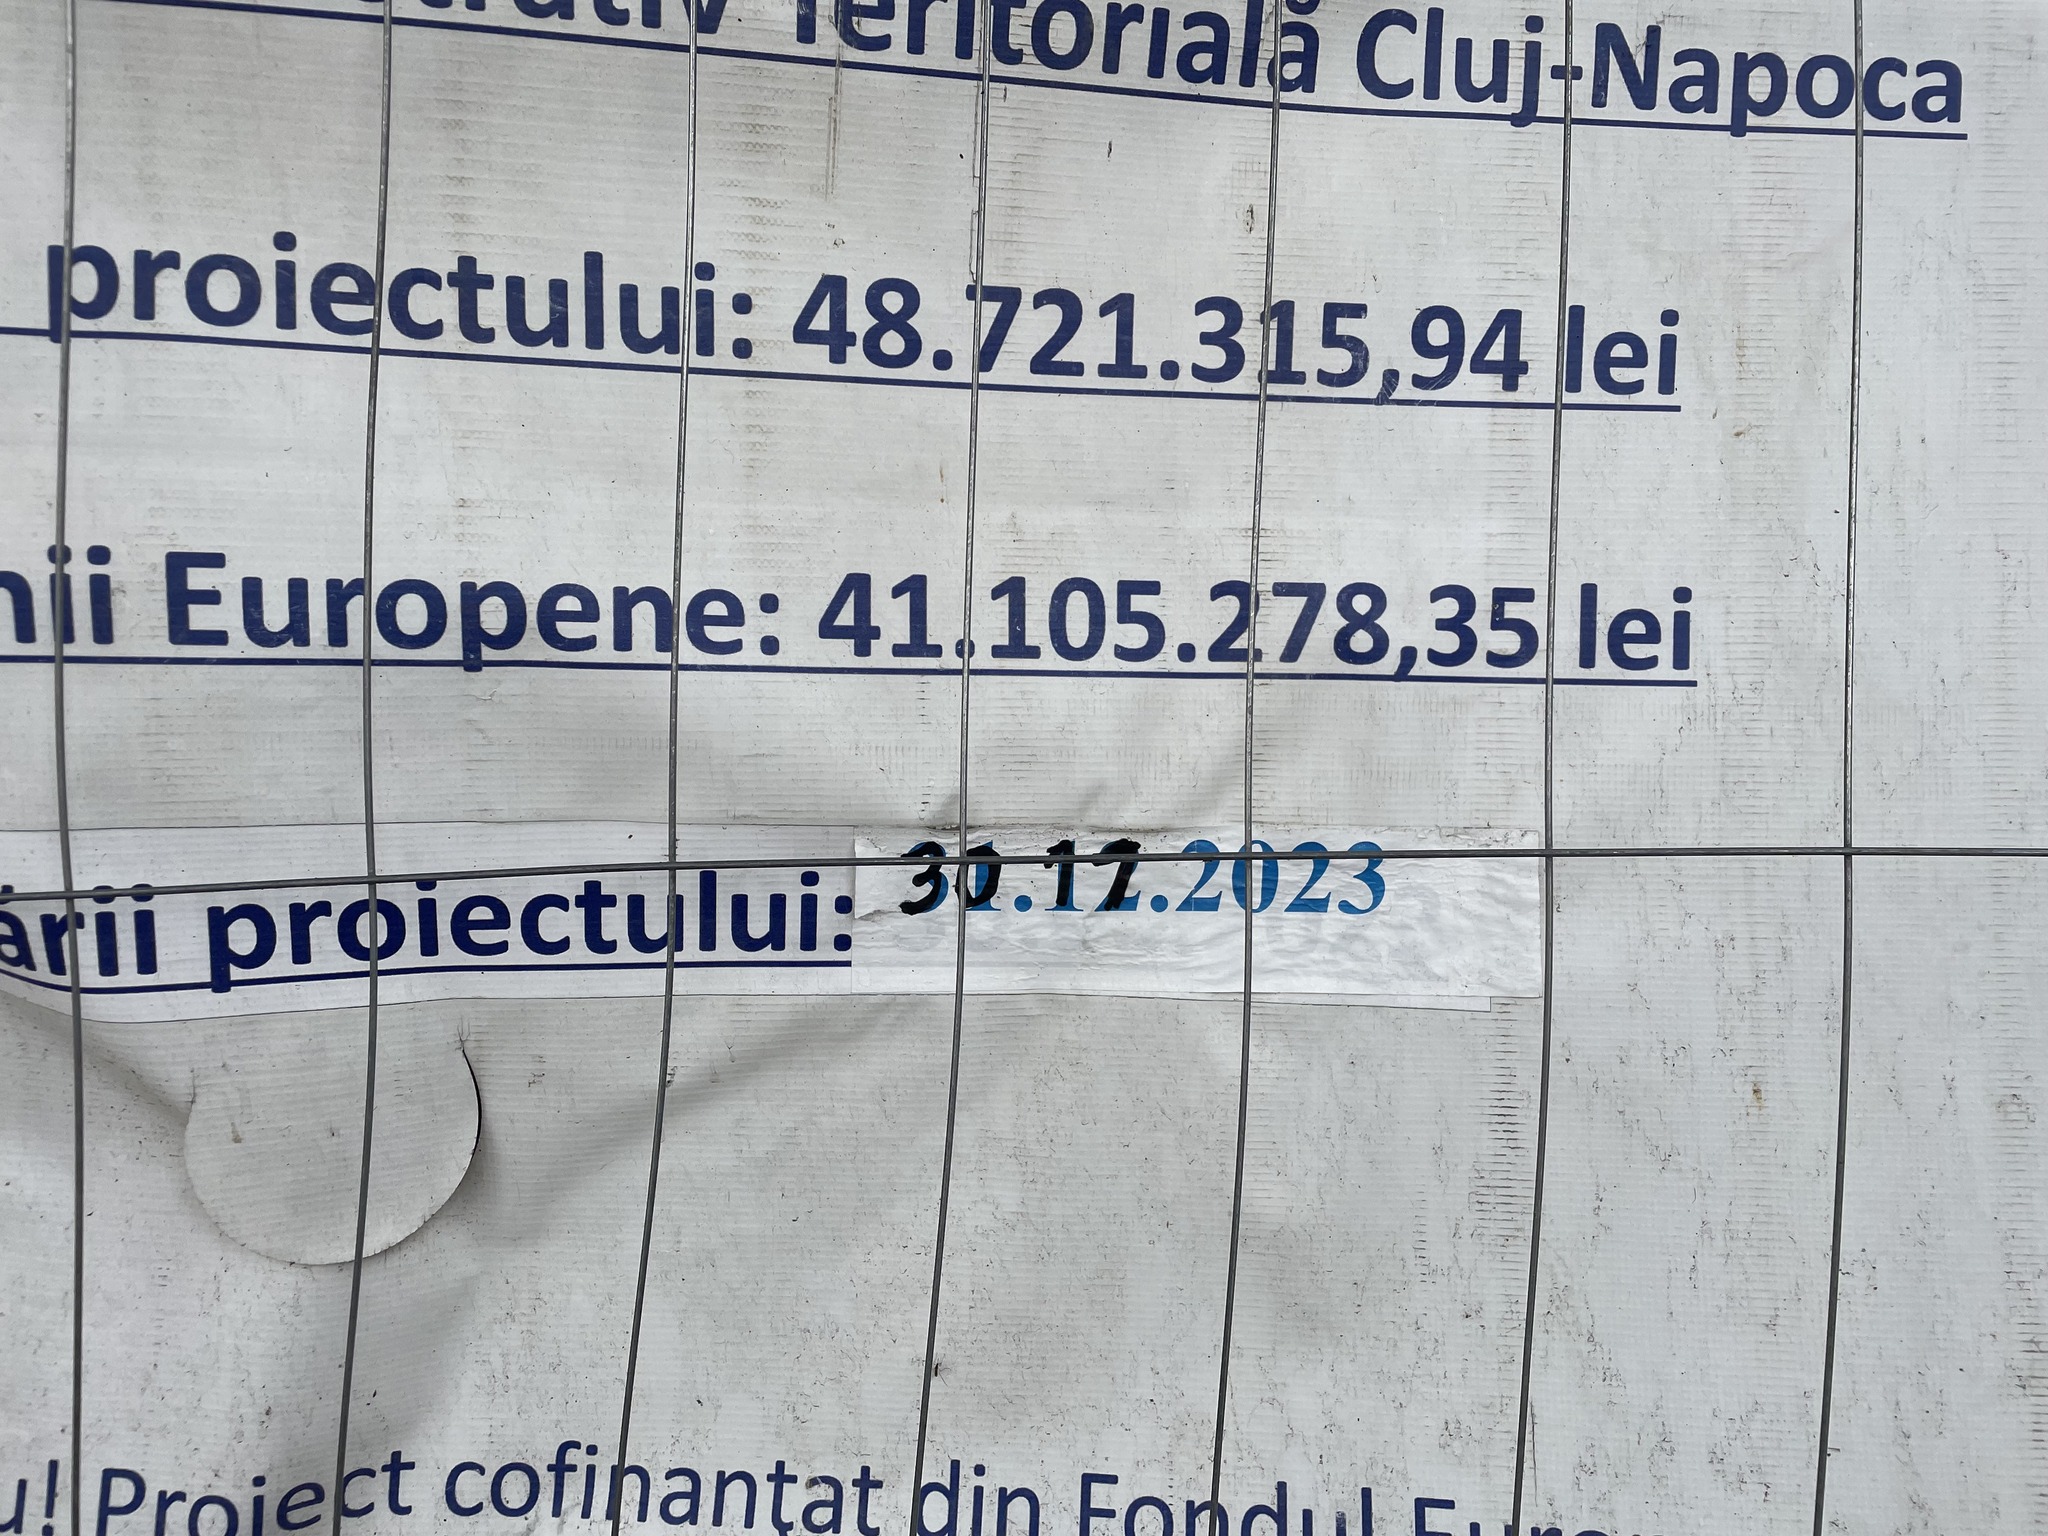 Ăsta e nivelul? Primăria a corectat cu markerul data la care se finalizează lucrările întârziate de pe Kogălniceanu și Universității - FOTO